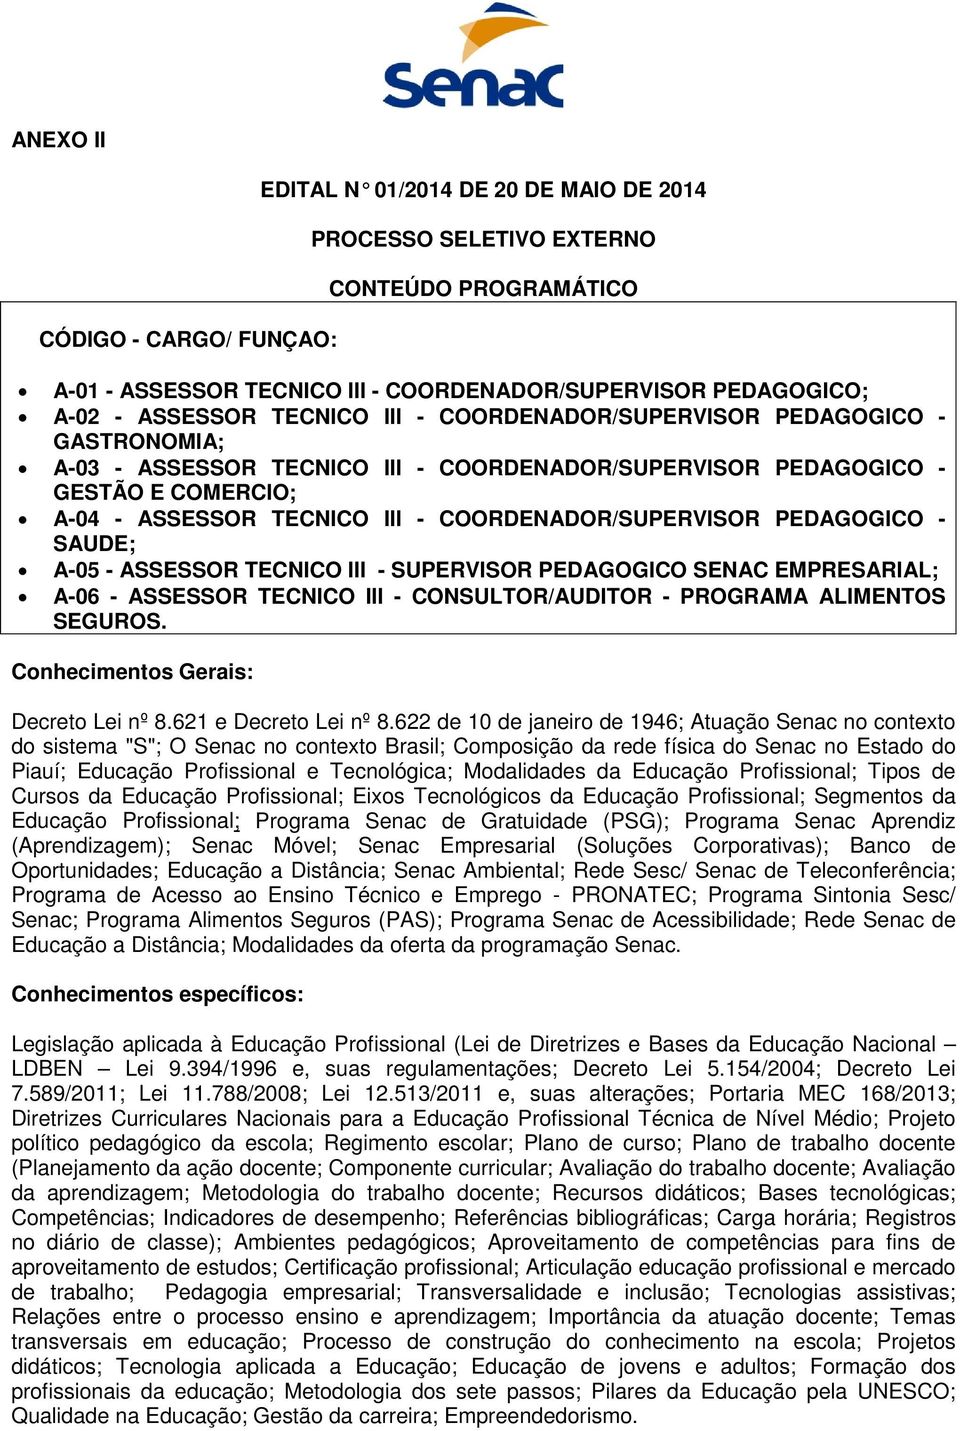 SAUDE; A-05 - ASSESSOR TECNICO III - SUPERVISOR PEDAGOGICO SENAC EMPRESARIAL; A-06 - ASSESSOR TECNICO III - CONSULTOR/AUDITOR - PROGRAMA ALIMENTOS SEGUROS.